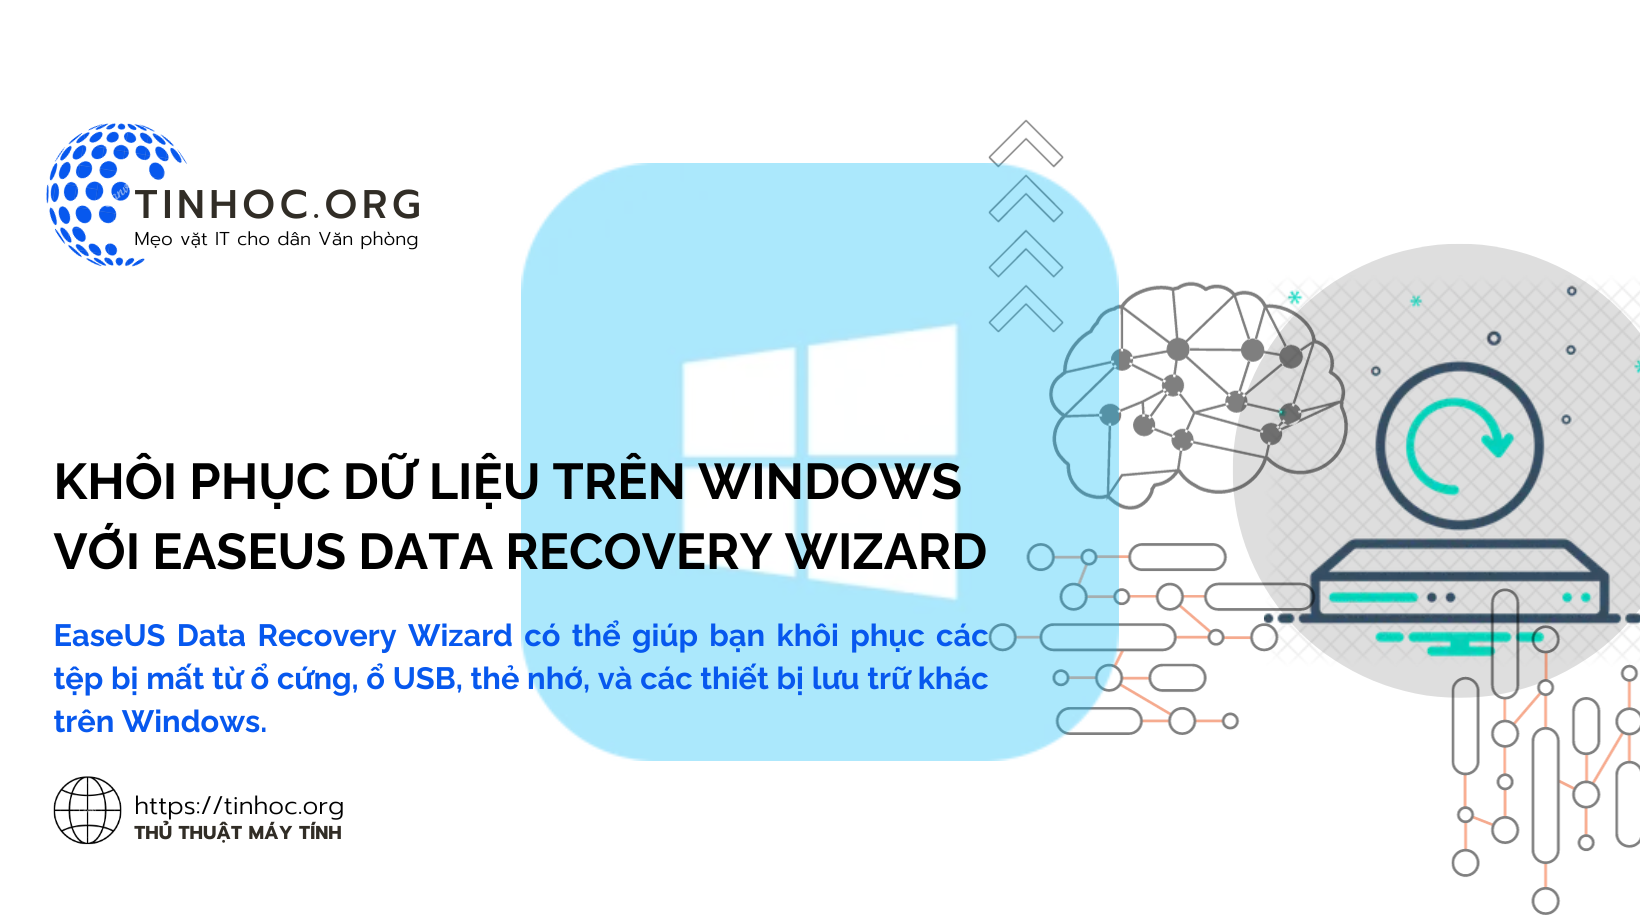 EaseUS Data Recovery Wizard có thể giúp bạn khôi phục các tệp bị mất từ ổ cứng, ổ USB, thẻ nhớ, và các thiết bị lưu trữ khác trên Windows.